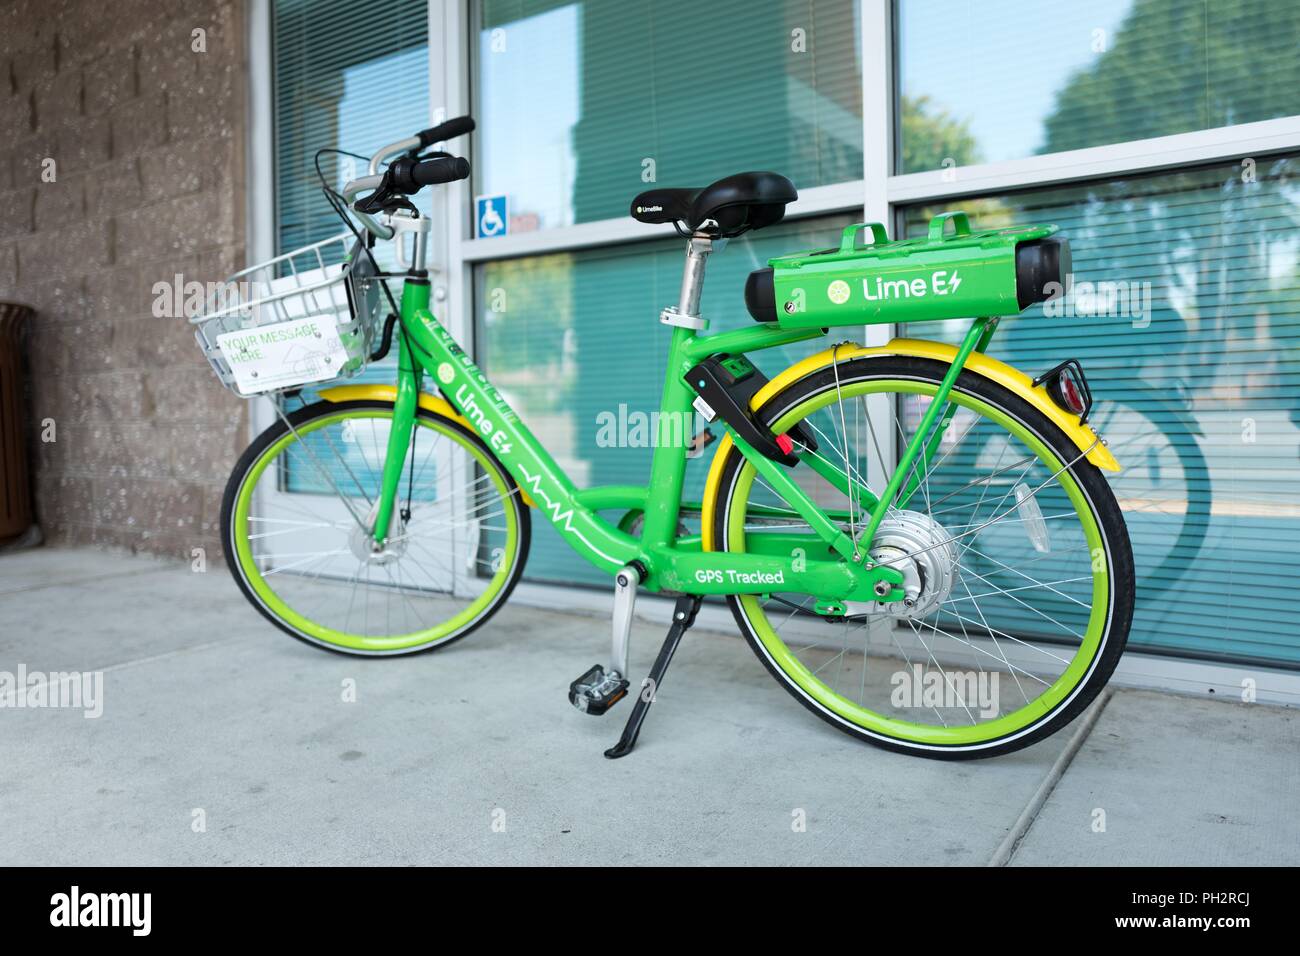 Faible angle de vue d'dockless vélo électrique de démarrage de l'économie de partage de la chaux, de la chaux comme marque E-Bike, stationné dans un centre commercial dans la Silicon Valley, Mountain View, Californie, le 28 juillet 2018. () Banque D'Images